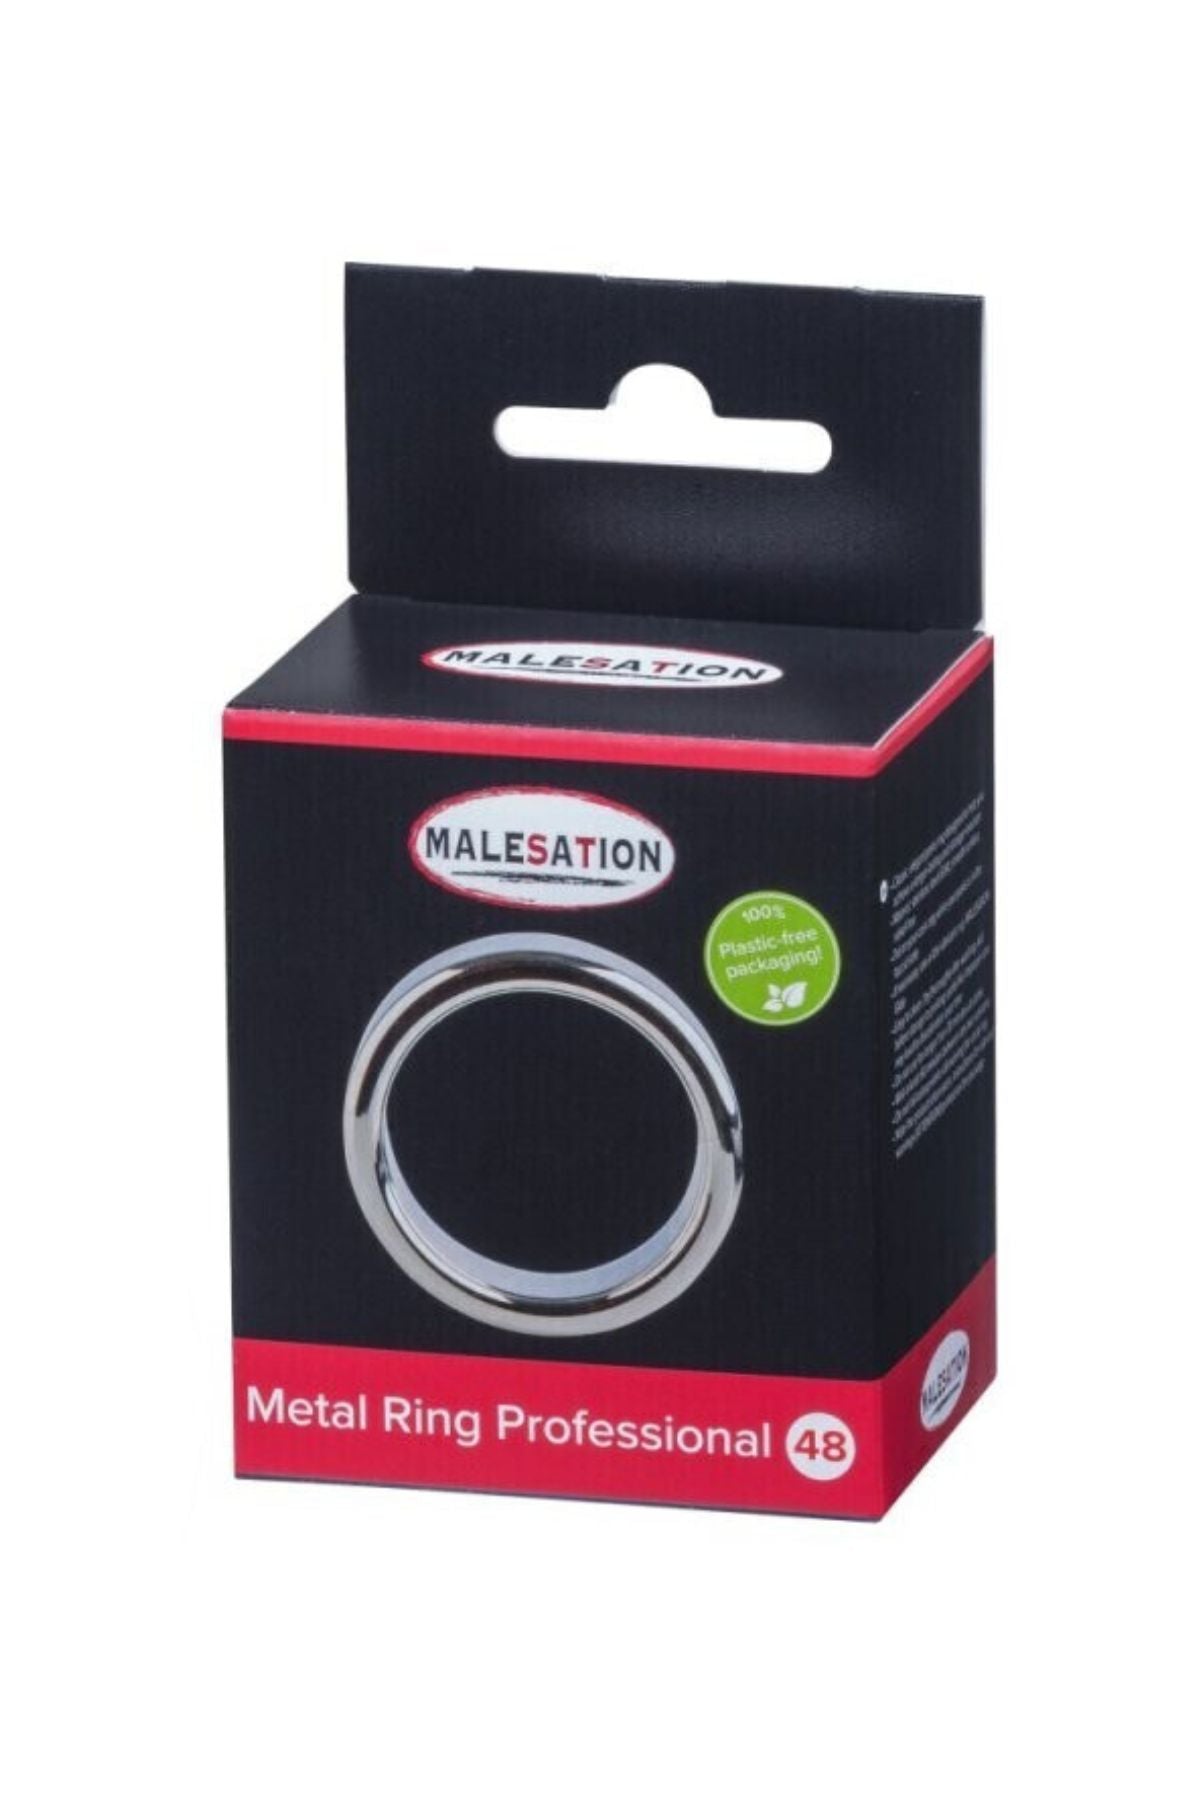 Malesation Metal Penis Ring